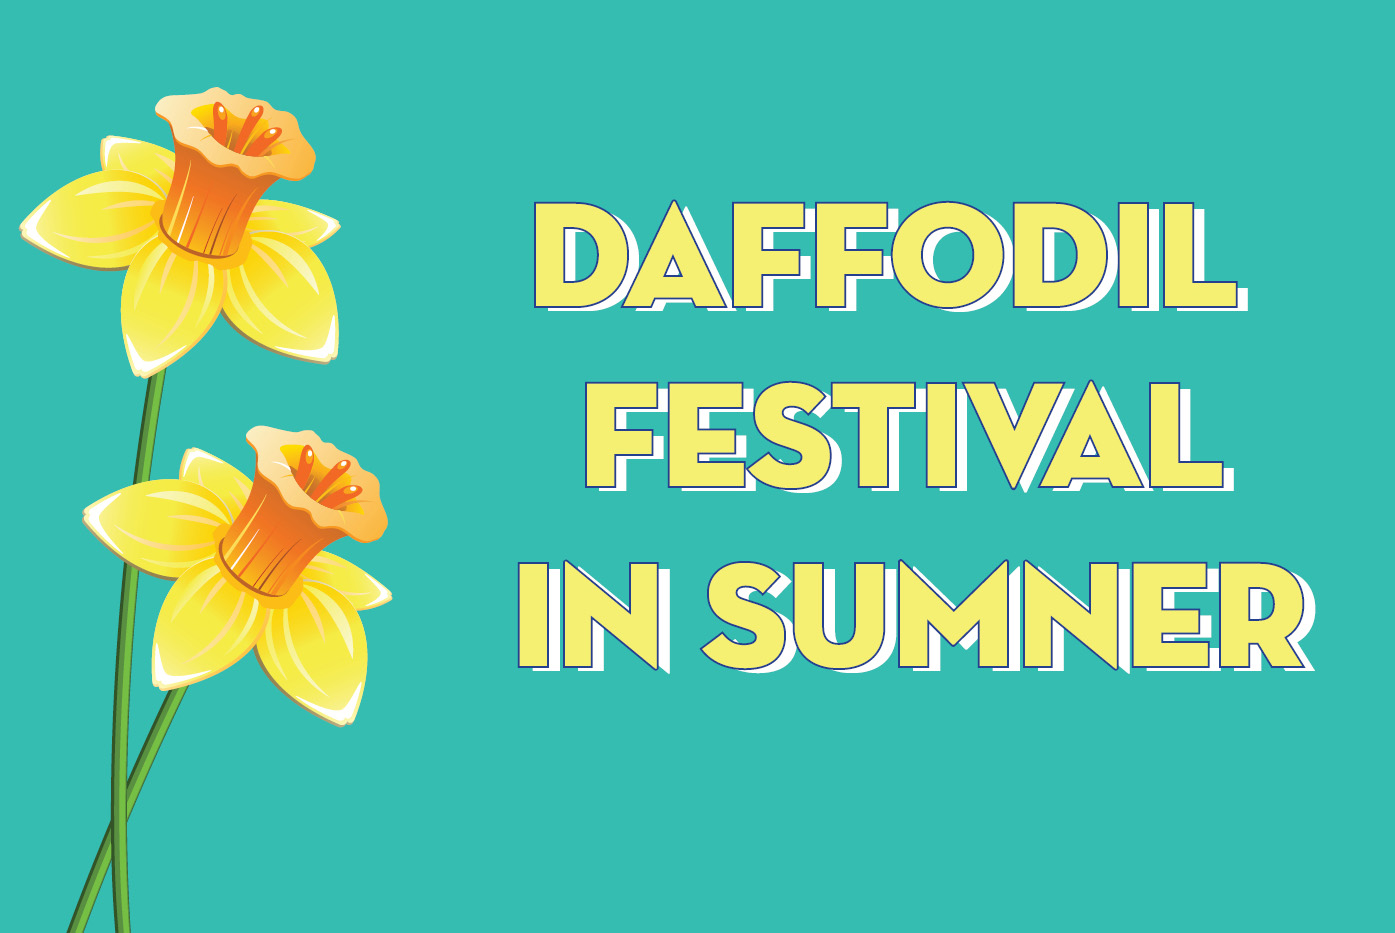 Daffodil Festival Sumner, Washington